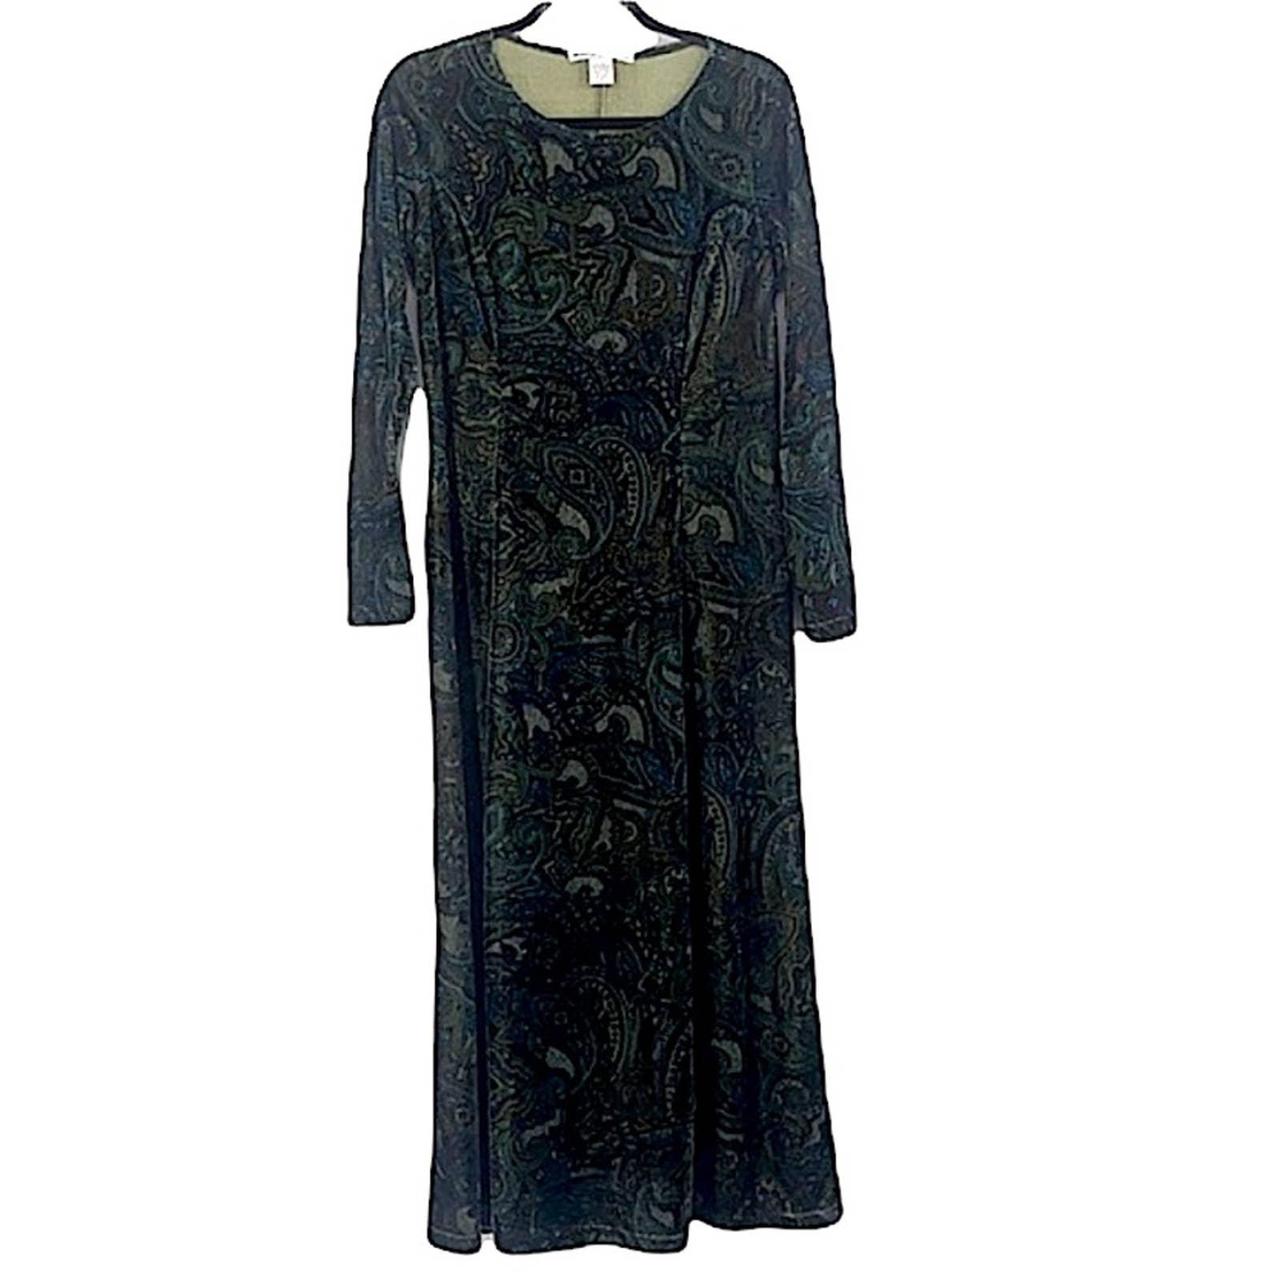 Vintage dark green velvet paisley dress size... - Depop